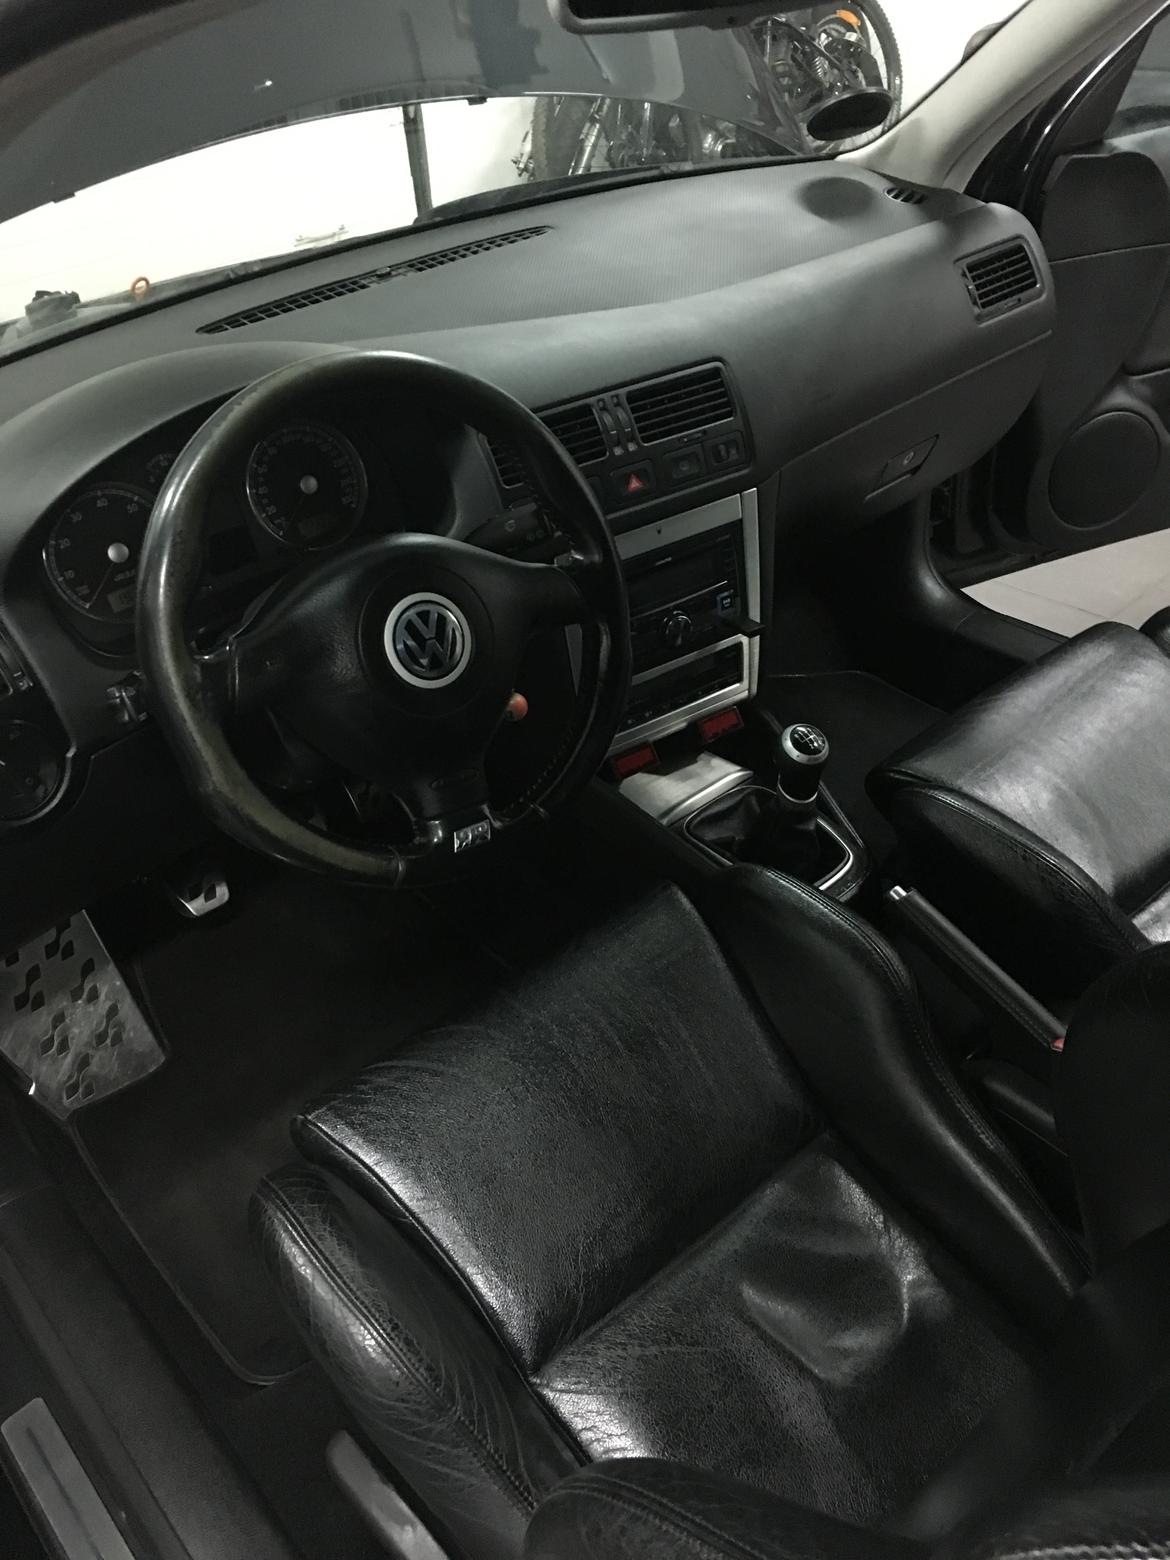 VW R32 turbo billede 3